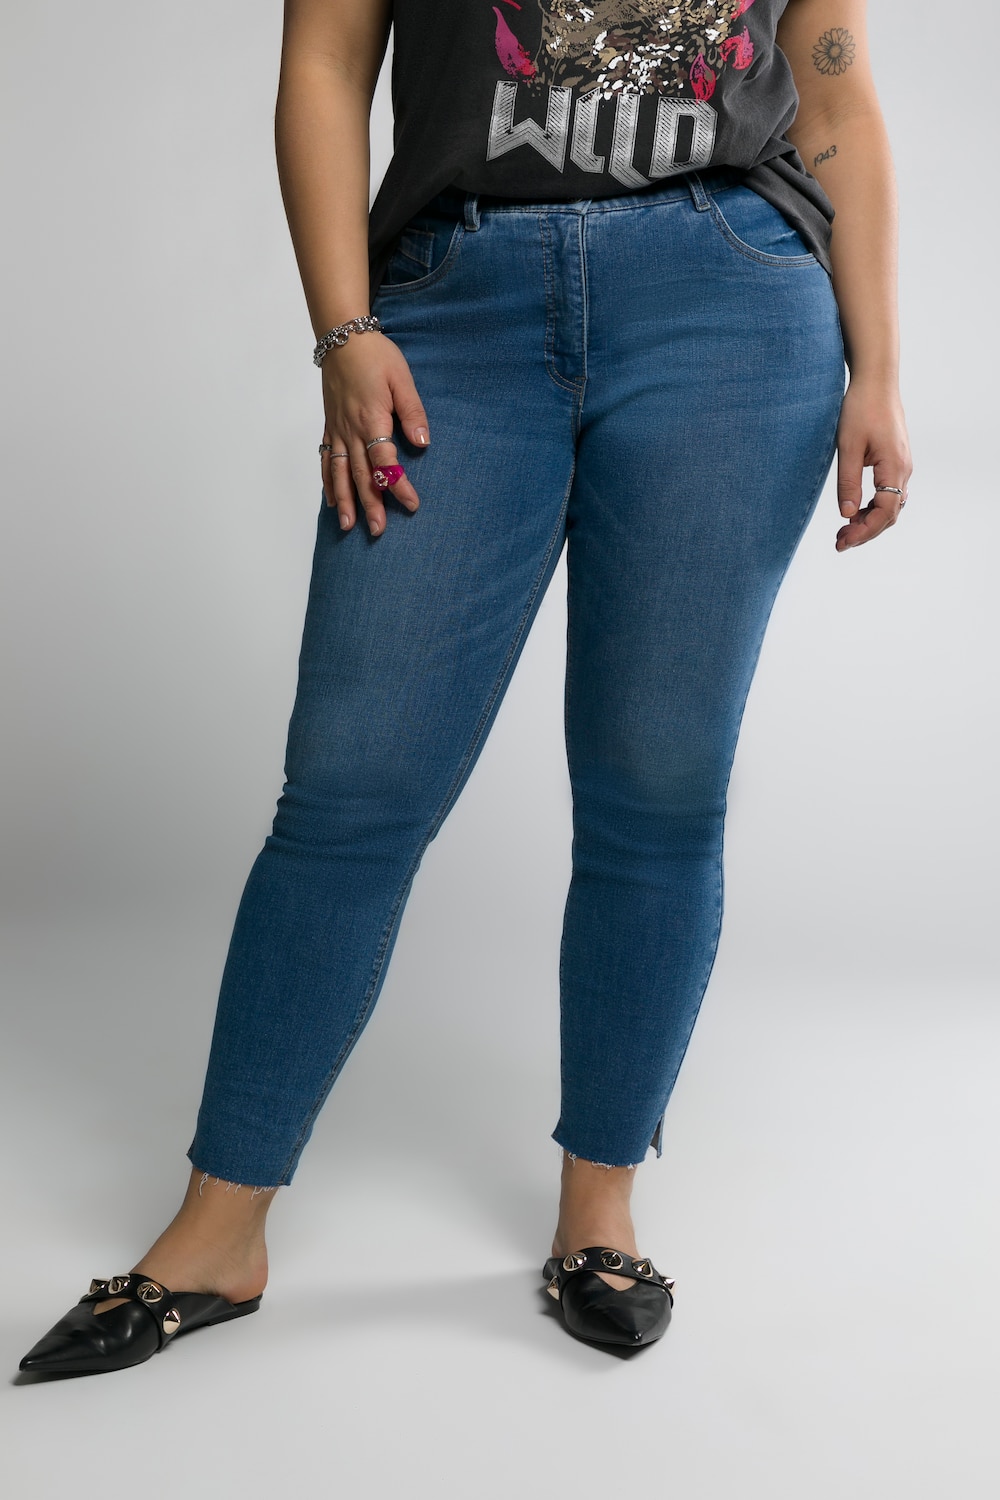 Grote Maten skinny jeans, Dames, blauw, Maat: 48, Katoen/Polyester, Studio Untold